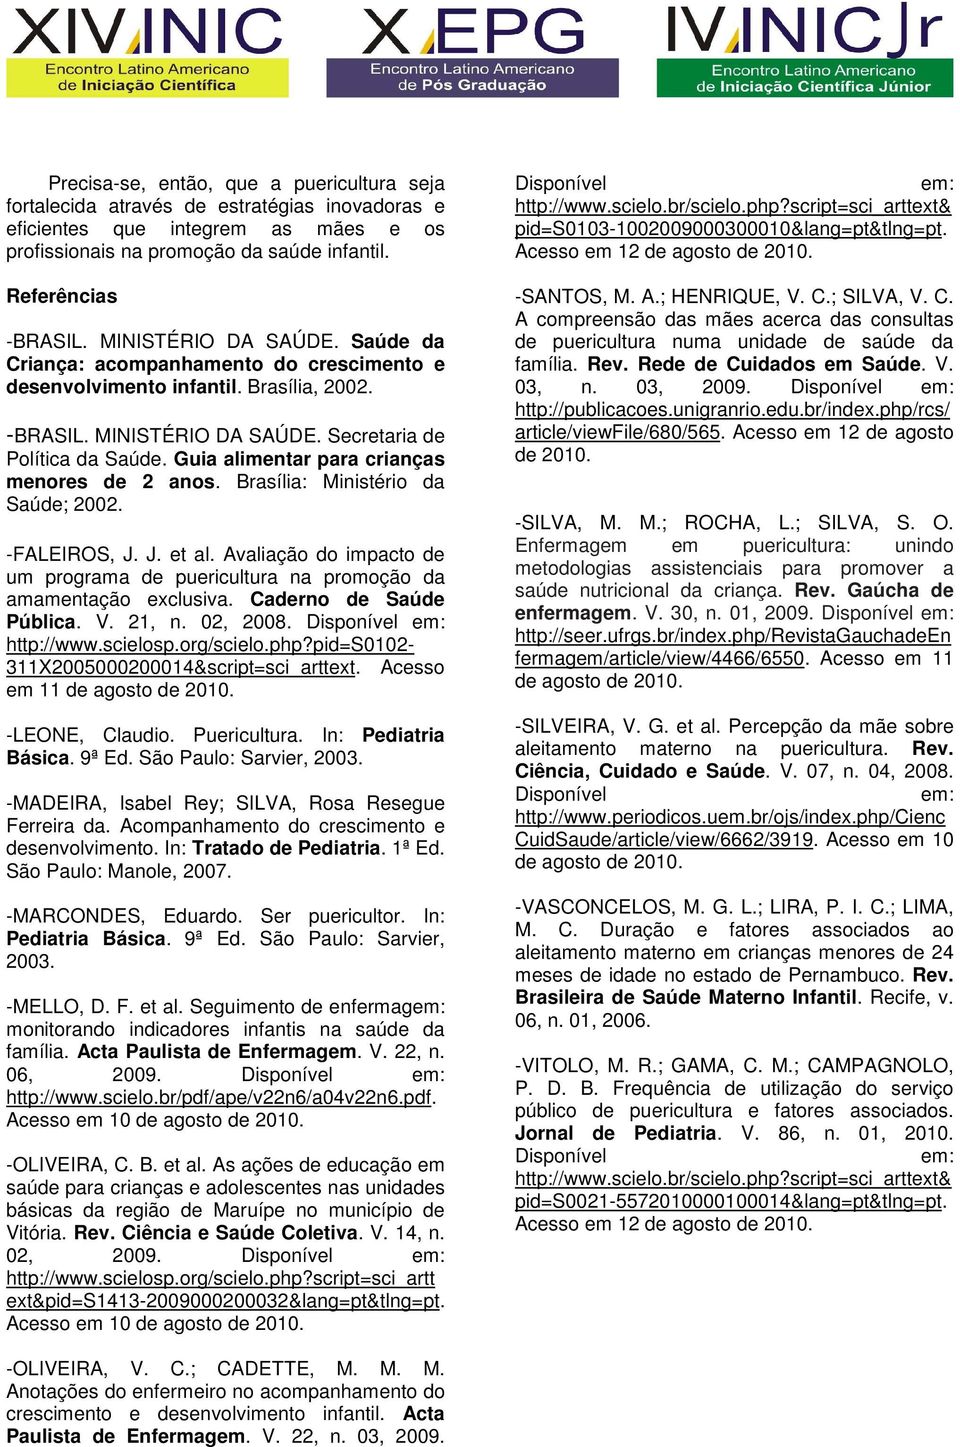 Brasília: Ministério da Saúde; 2002. -FALEIROS, J. J. et al. Avaliação do impacto de um programa de puericultura na promoção da amamentação exclusiva. Caderno de Saúde Pública. V. 21, n. 02, 2008.